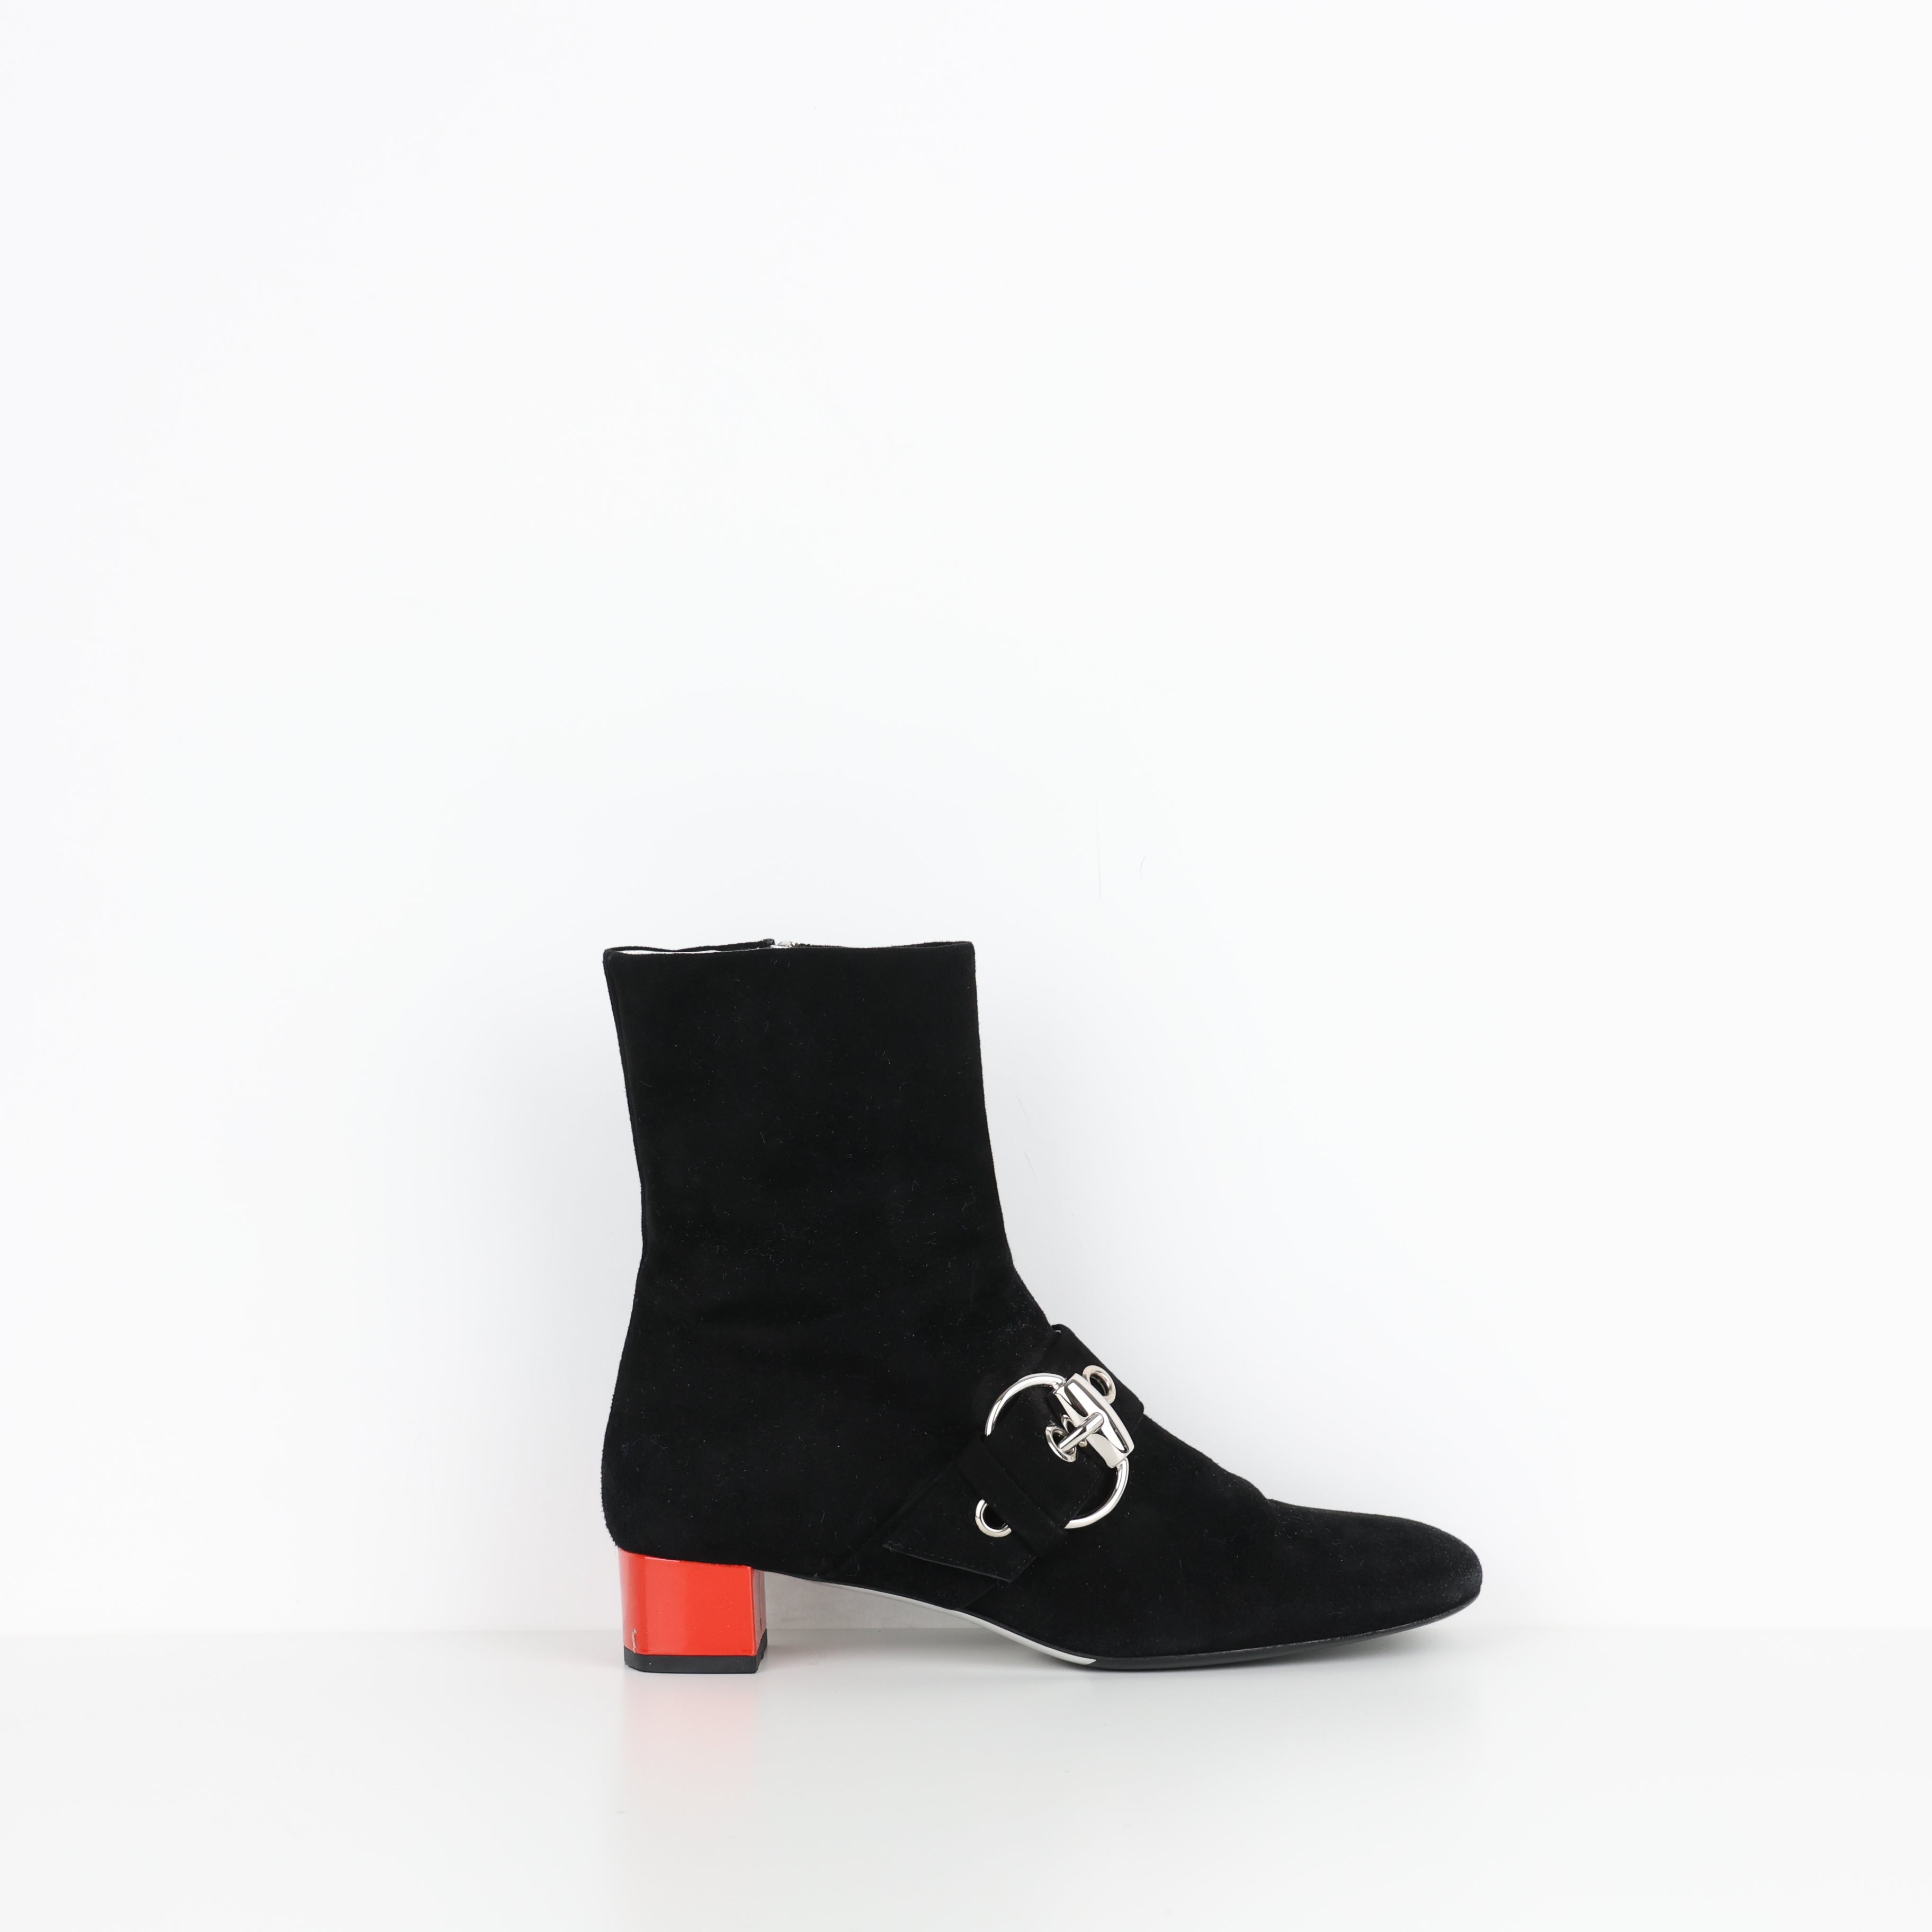 Boots , Shoe Size 37.5